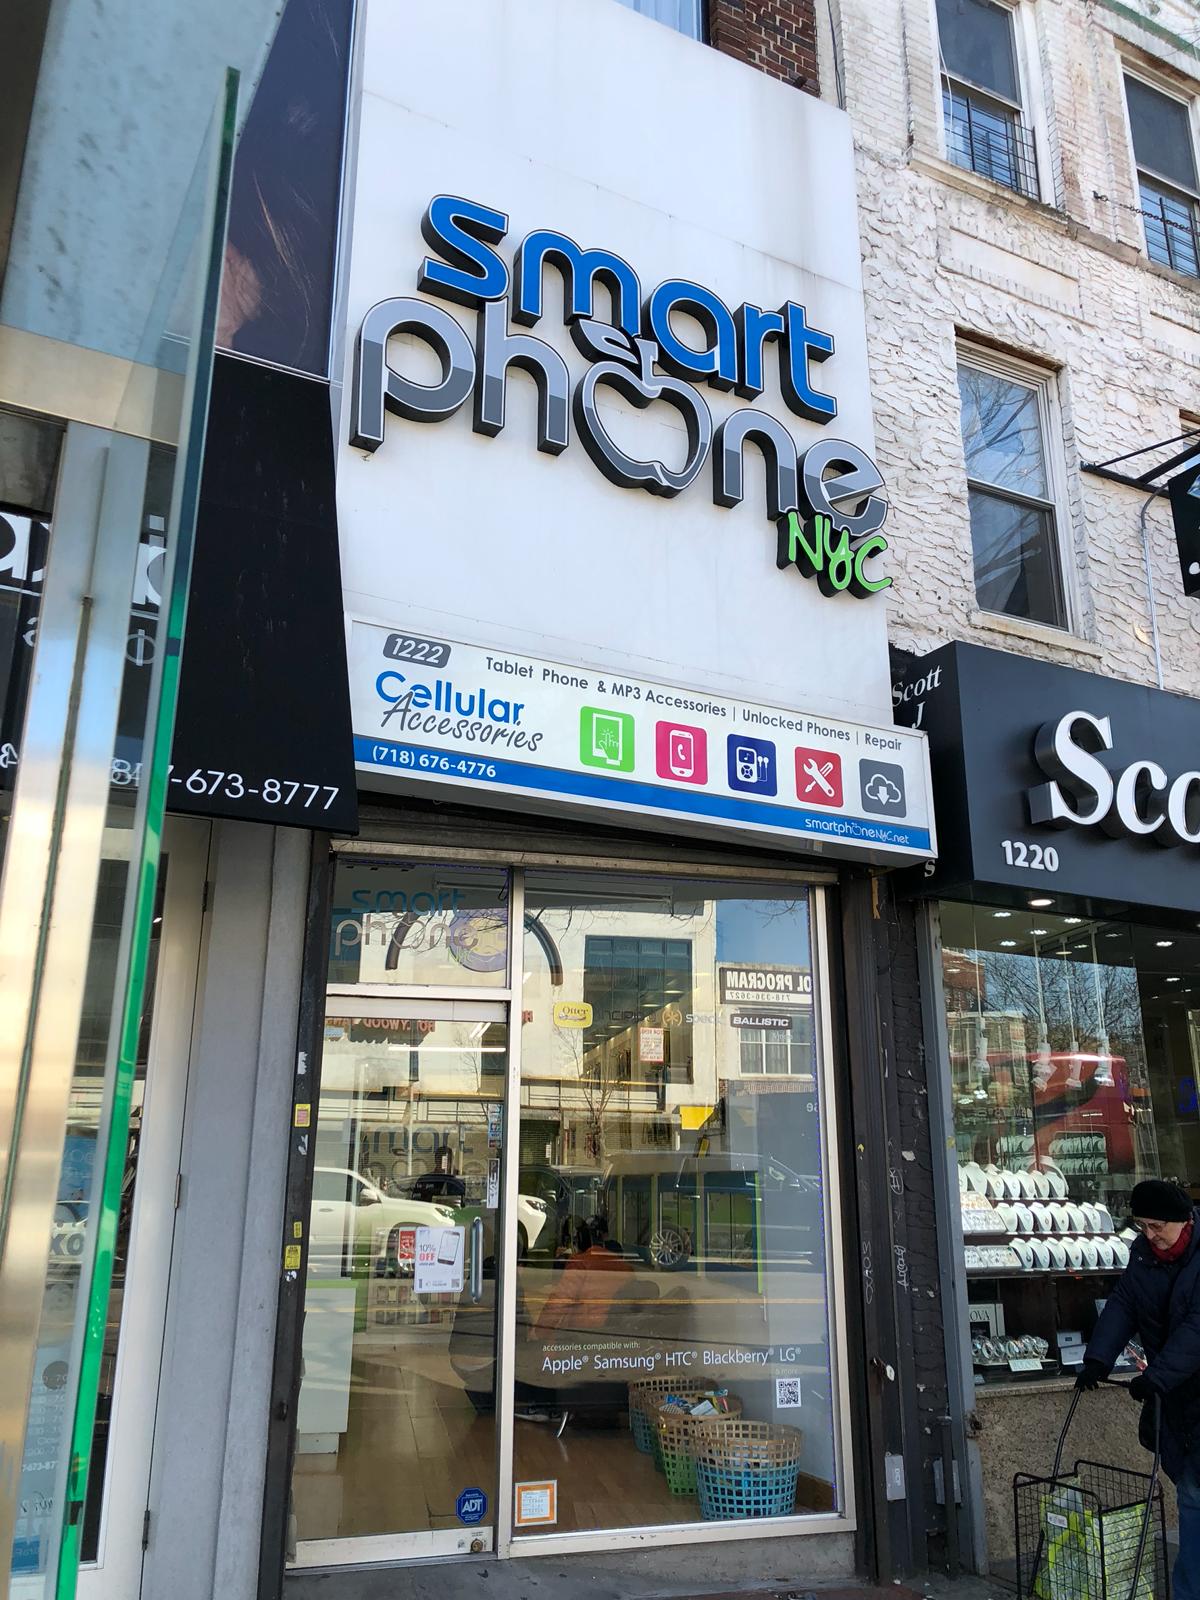 Smart Phone NYC - Kings Highway